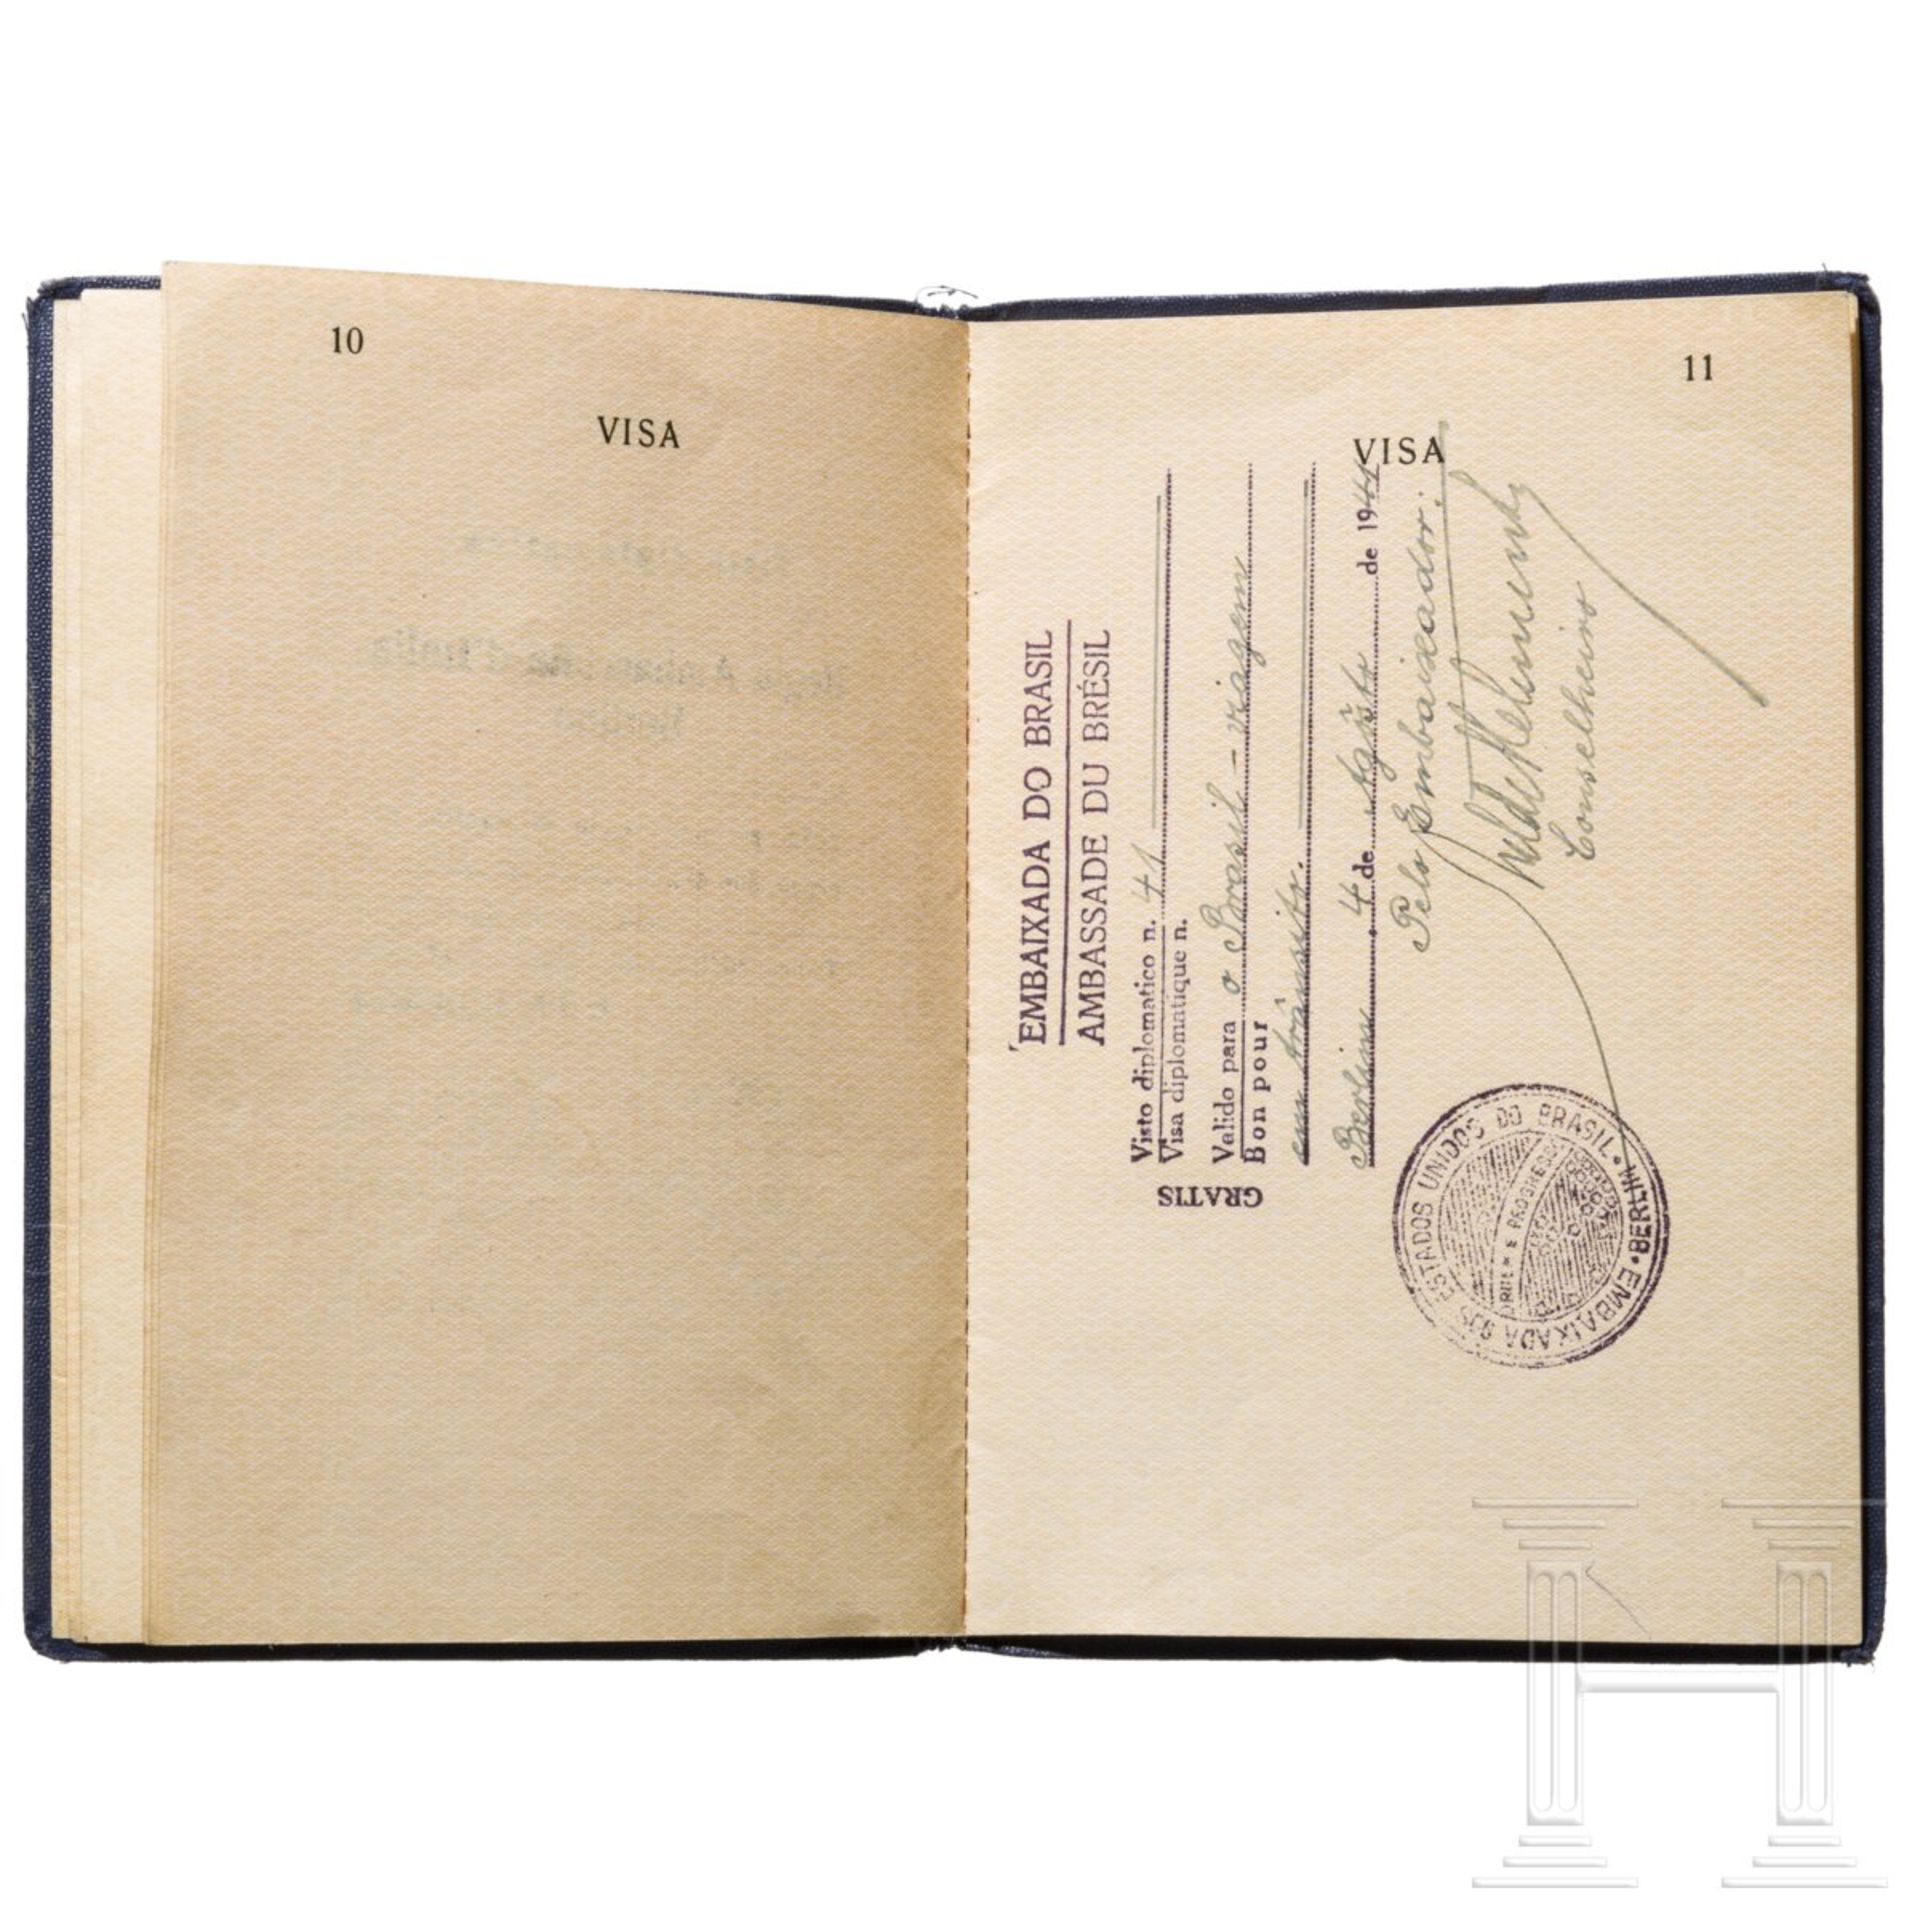 Fritz Wiedemann (1891 - 1970) - Diplomatenpass, Ausweise, Bücher und Karte aus seiner Zeit als Gener - Image 7 of 10